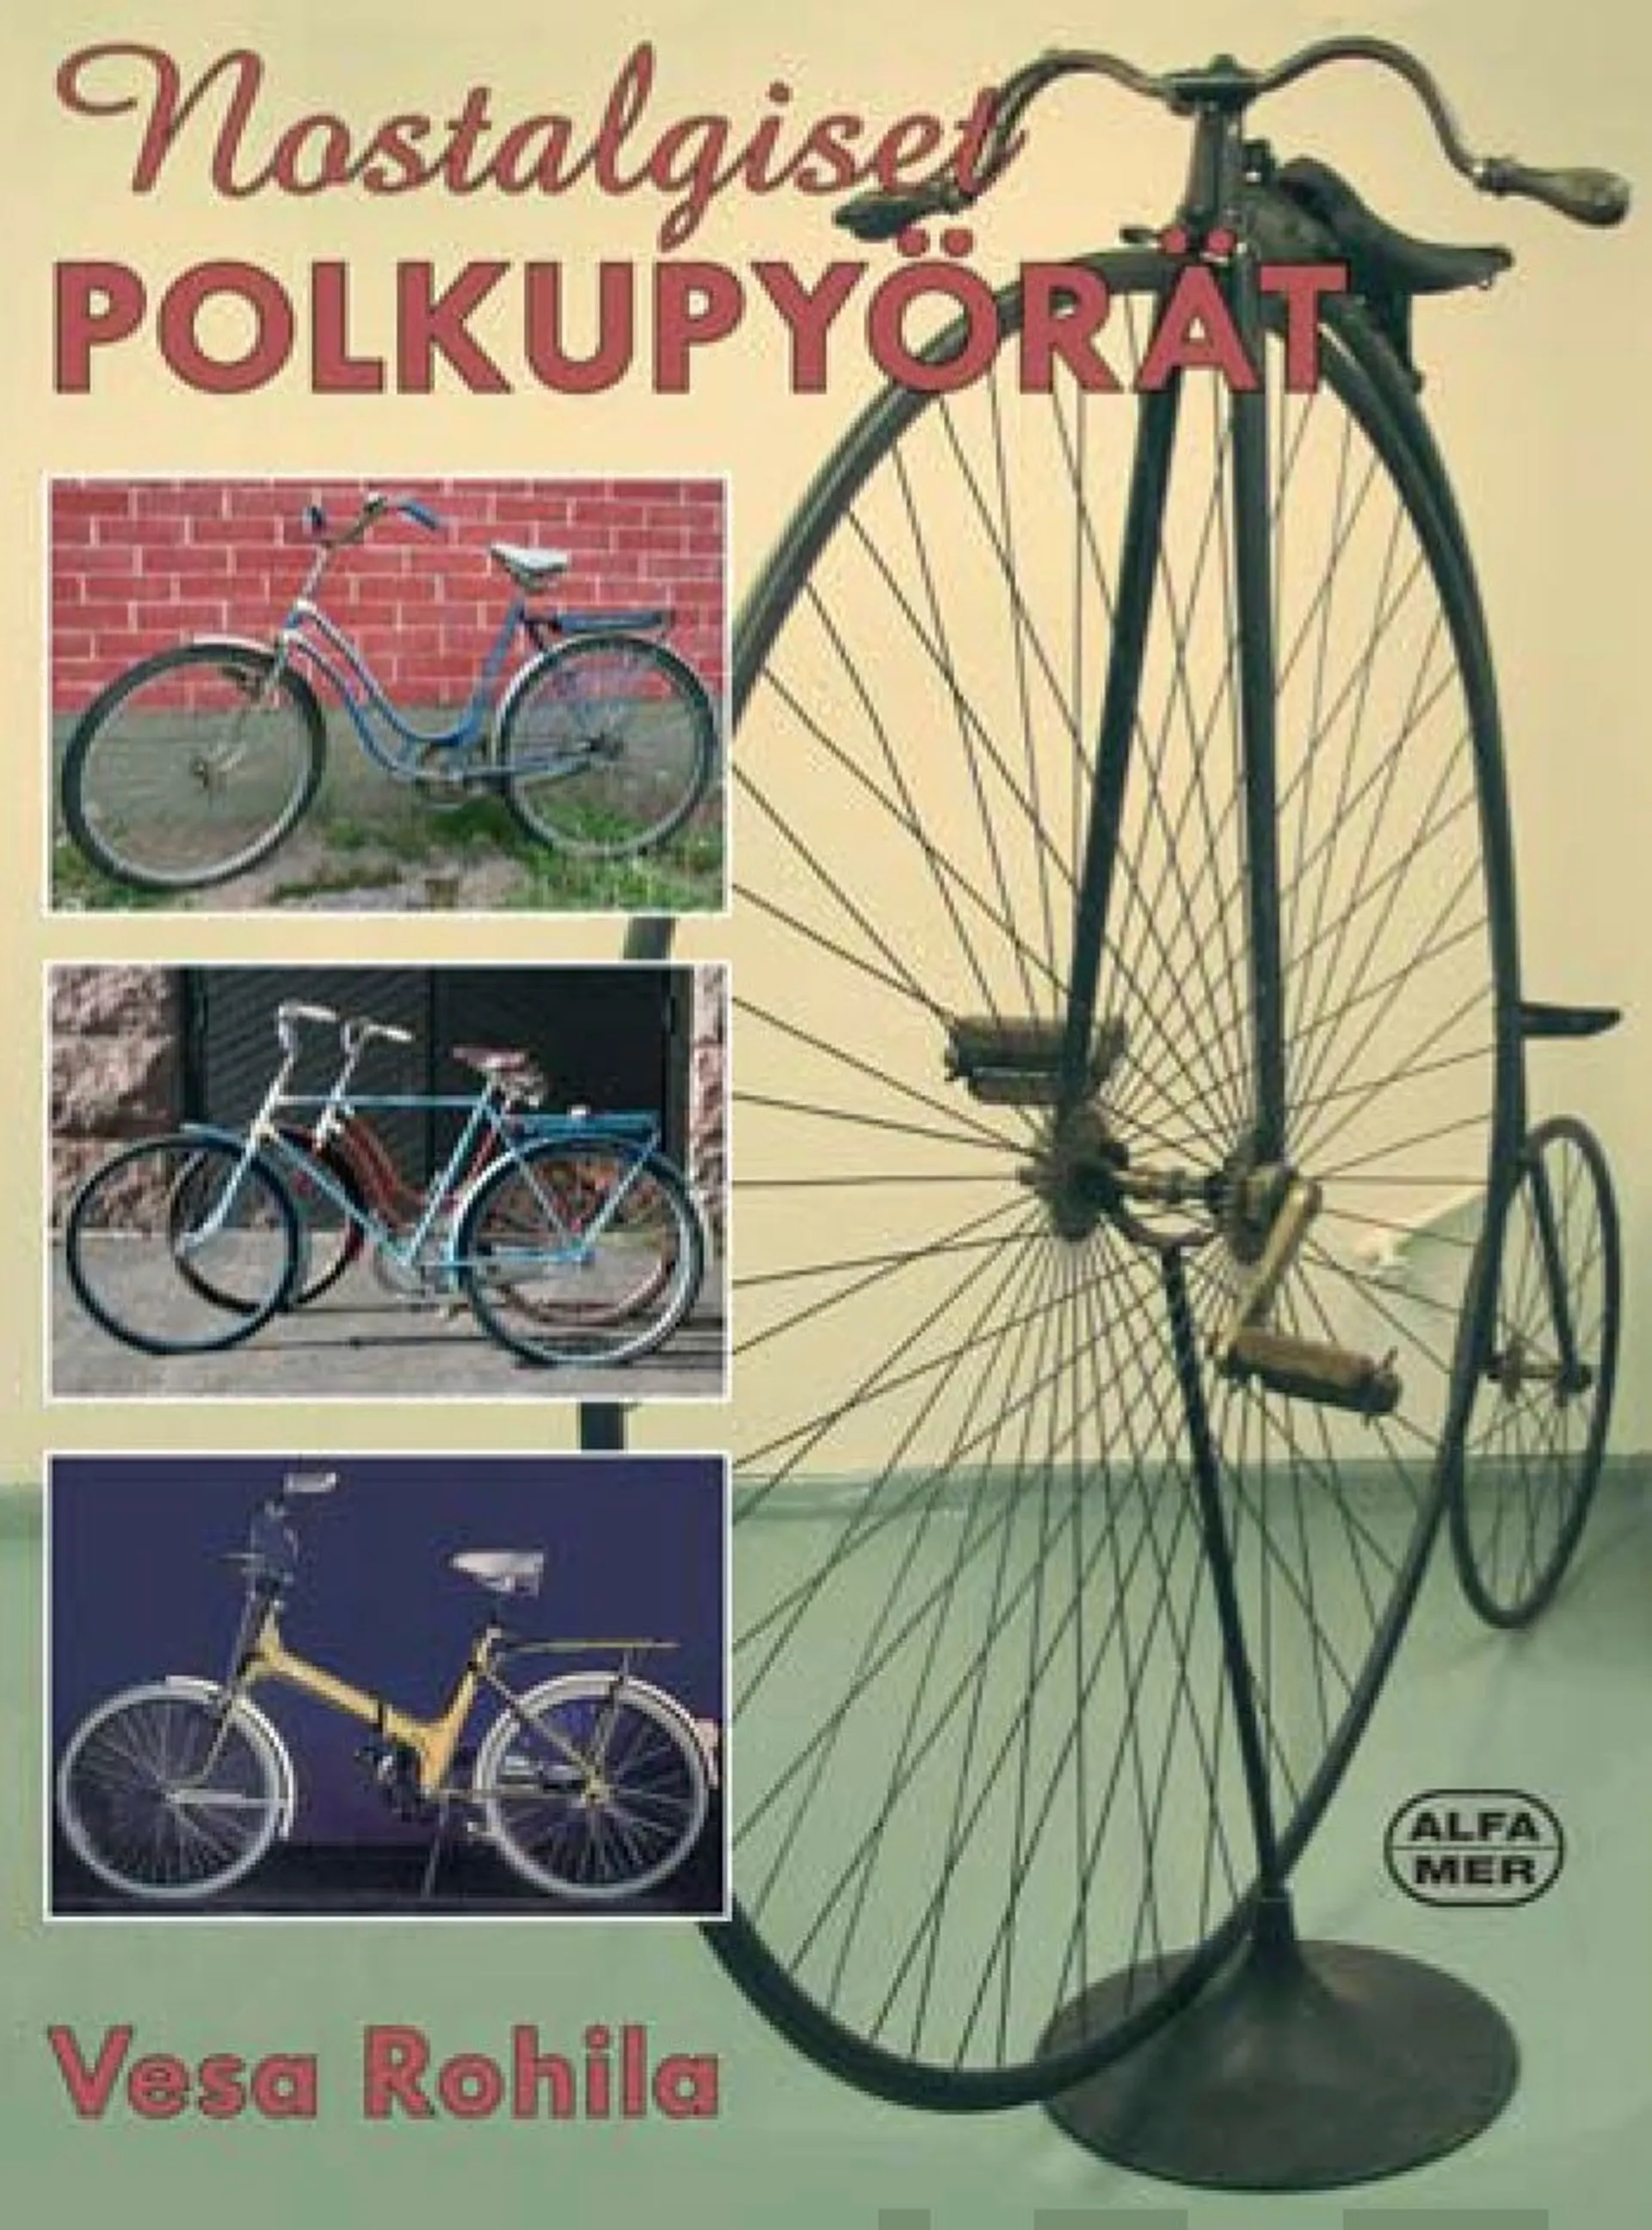 Rohila, Nostalgiset polkupyörät